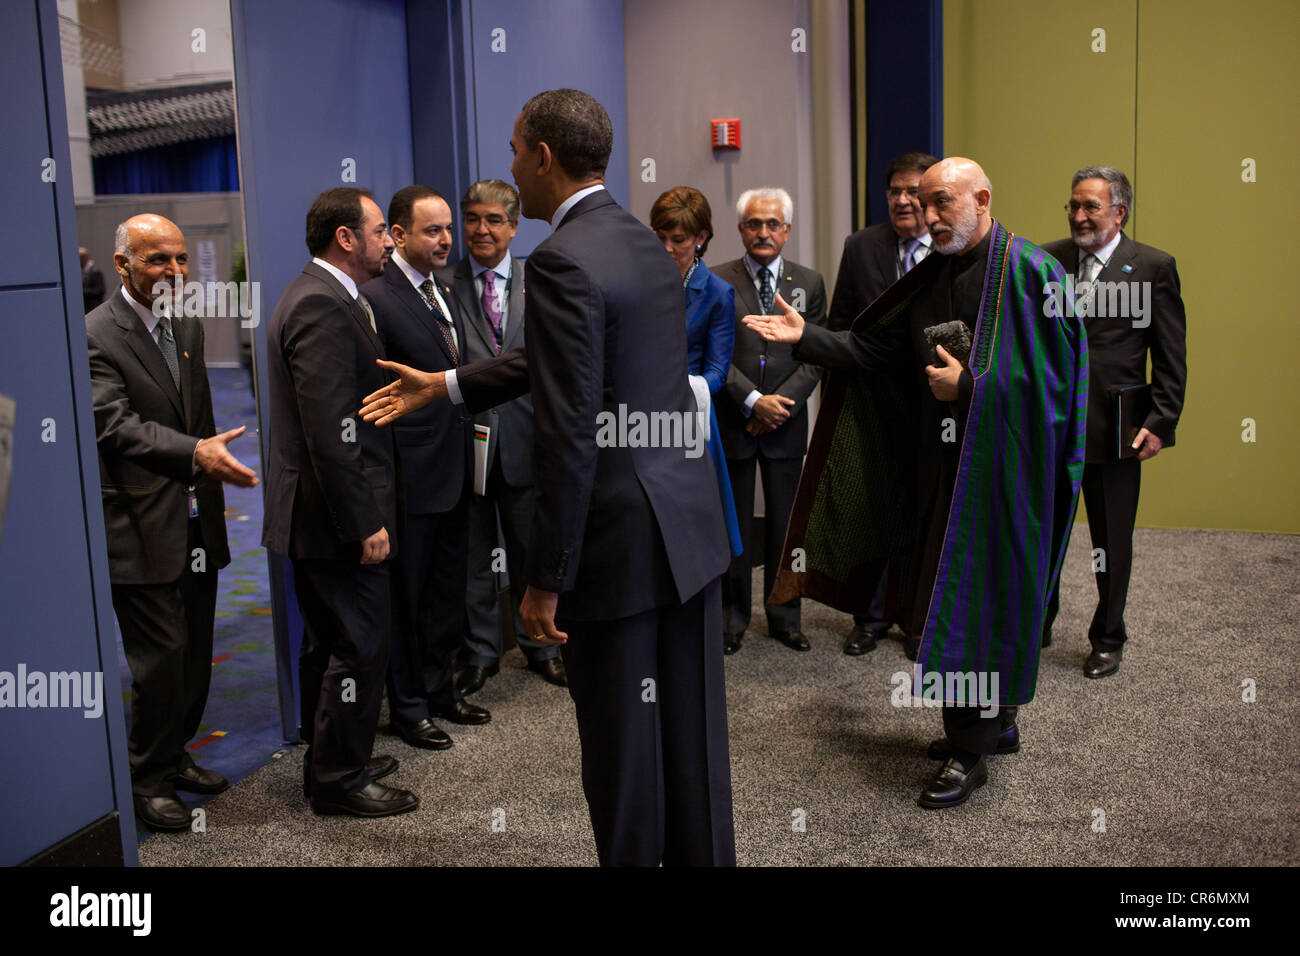 Le président Hamid Karzai d'Afghanistan présente les membres de la délégation afghane au président américain Barack Obama, avant leur réunion bilatérale lors du sommet de l'OTAN le 20 mai 2012 à Chicago, IL. Banque D'Images